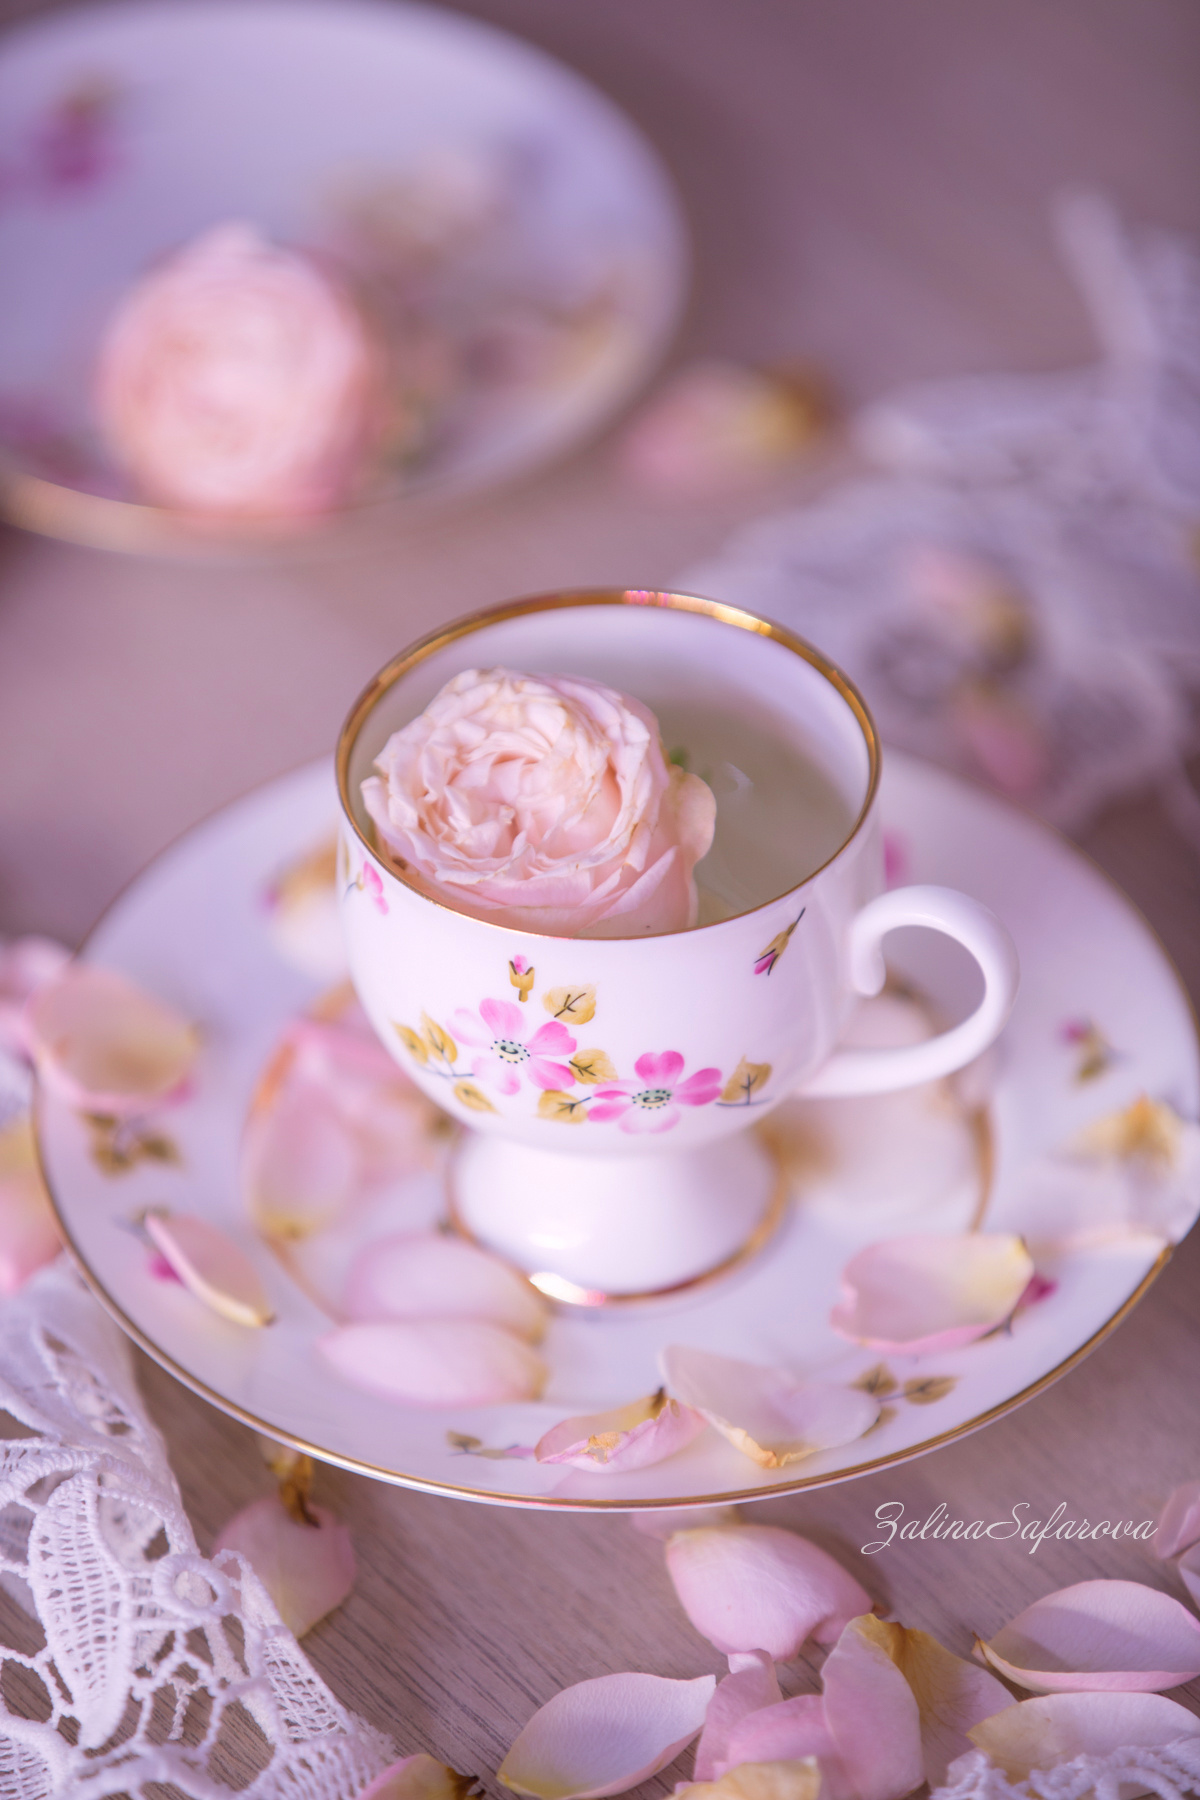 Утренний свет утро свет роза чай нежность чашка блюдце